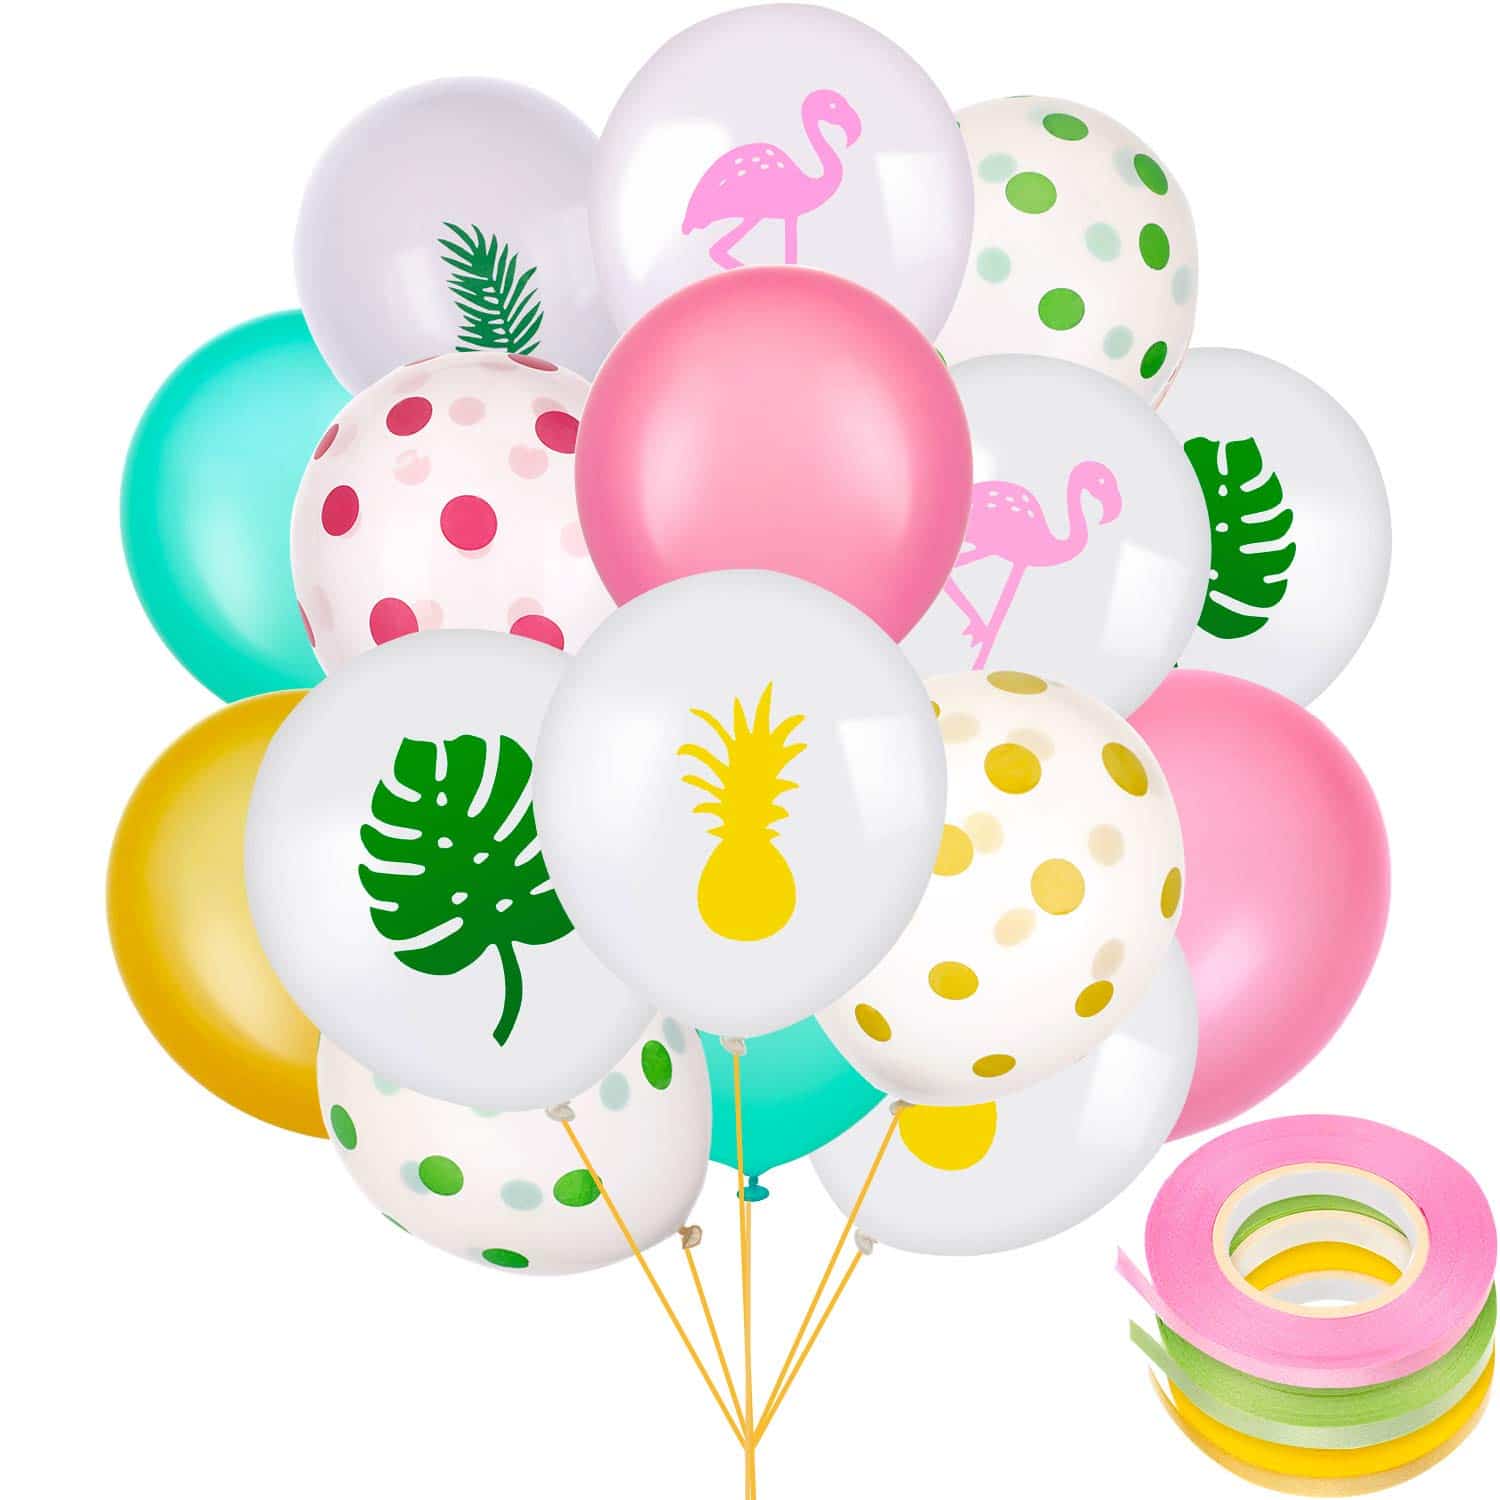 50 Piezas de Globos de Fiesta Hawaiana Globos de Látex Incluye Globos de Puntos Lunares Flamingo Piña de Hoja Tropical con 3 Rollos de Cintas para Decoración de Fiesta